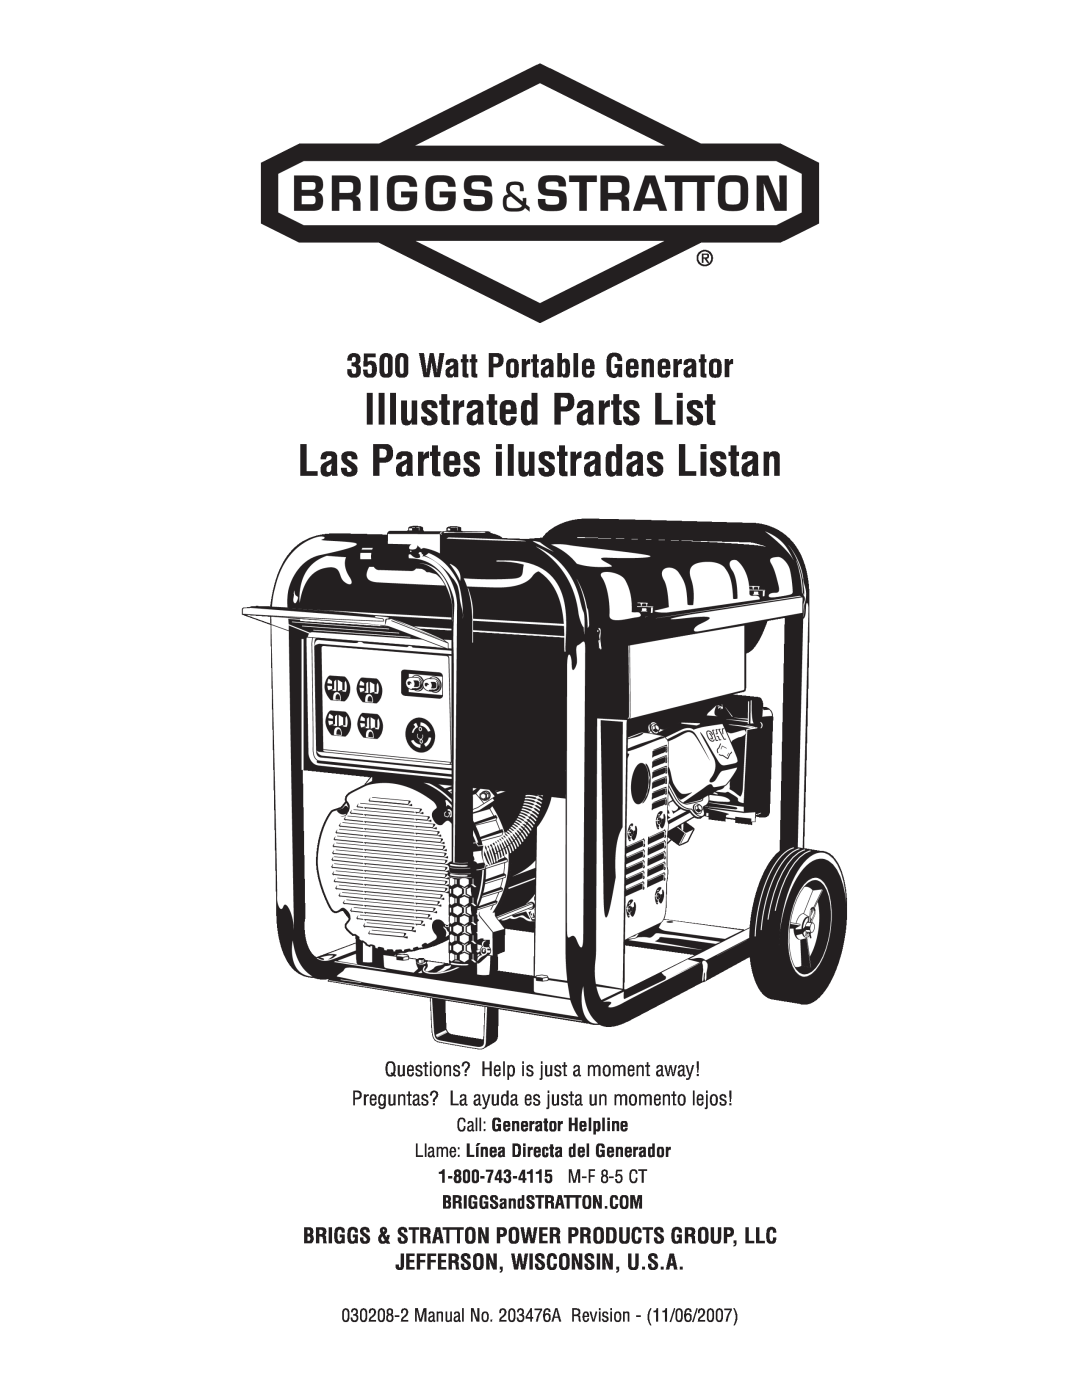 Briggs & Stratton 030208-2 manual Watt Portable Generator, Call Generator Helpline, Llame Línea Directa del Generador 